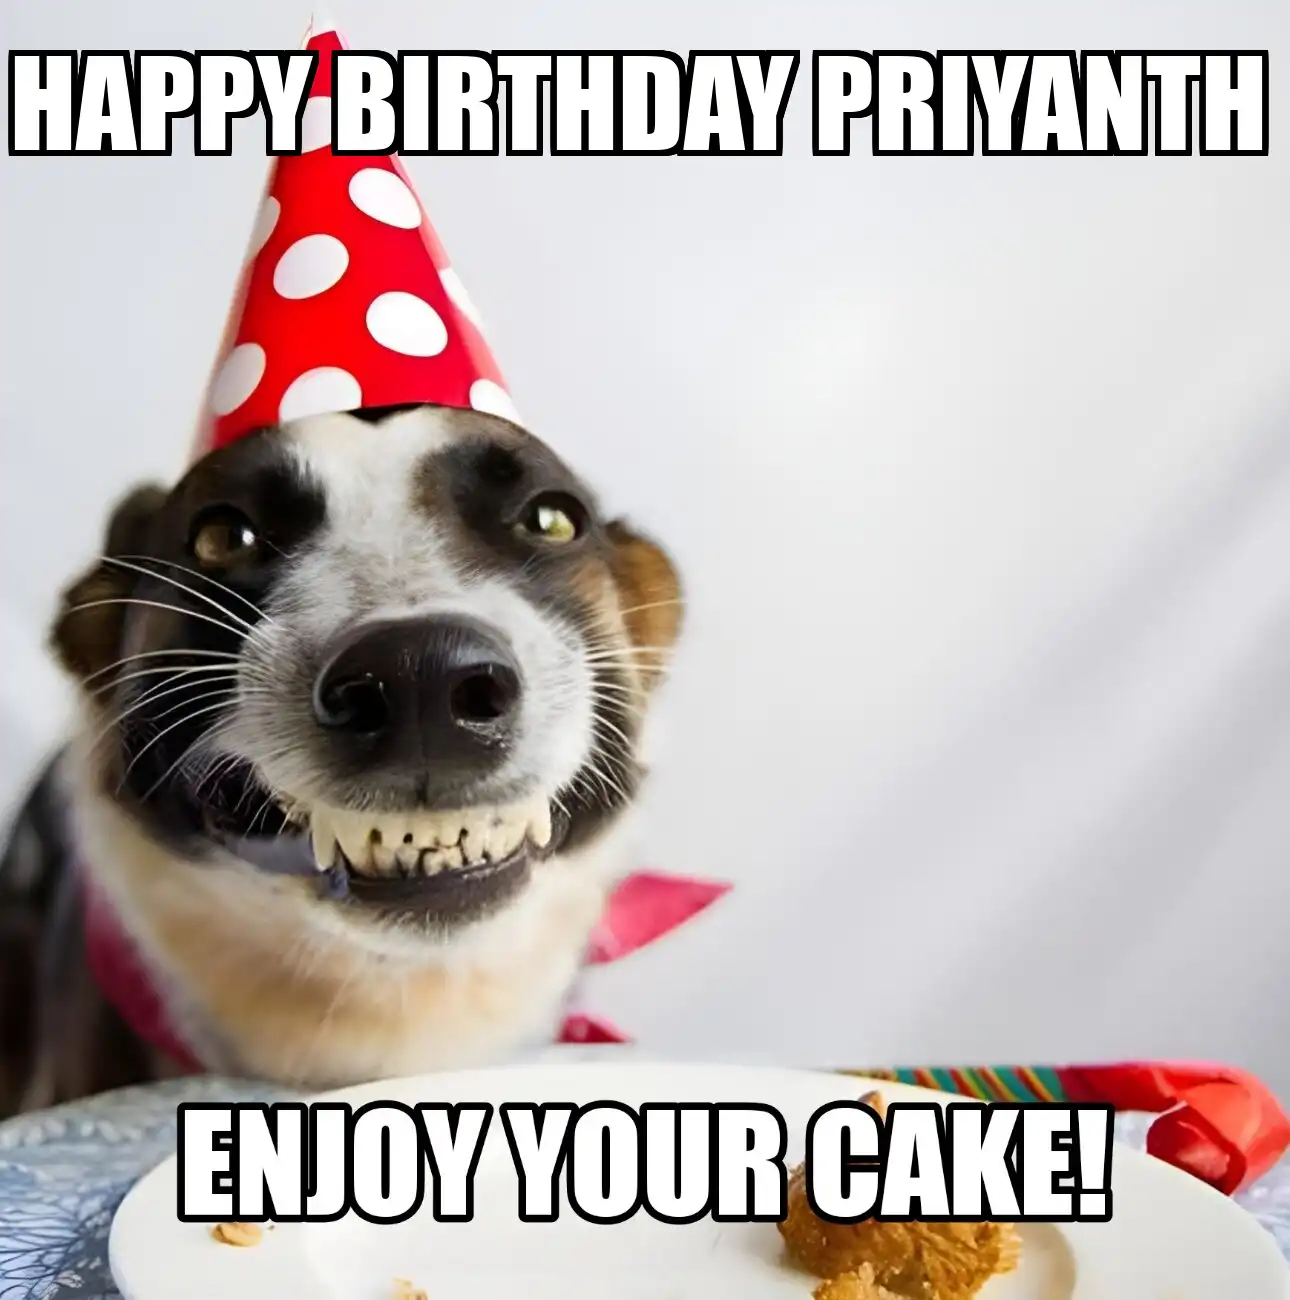 Happy Birthday Priyanth Enjoy Your Cake Dog Meme